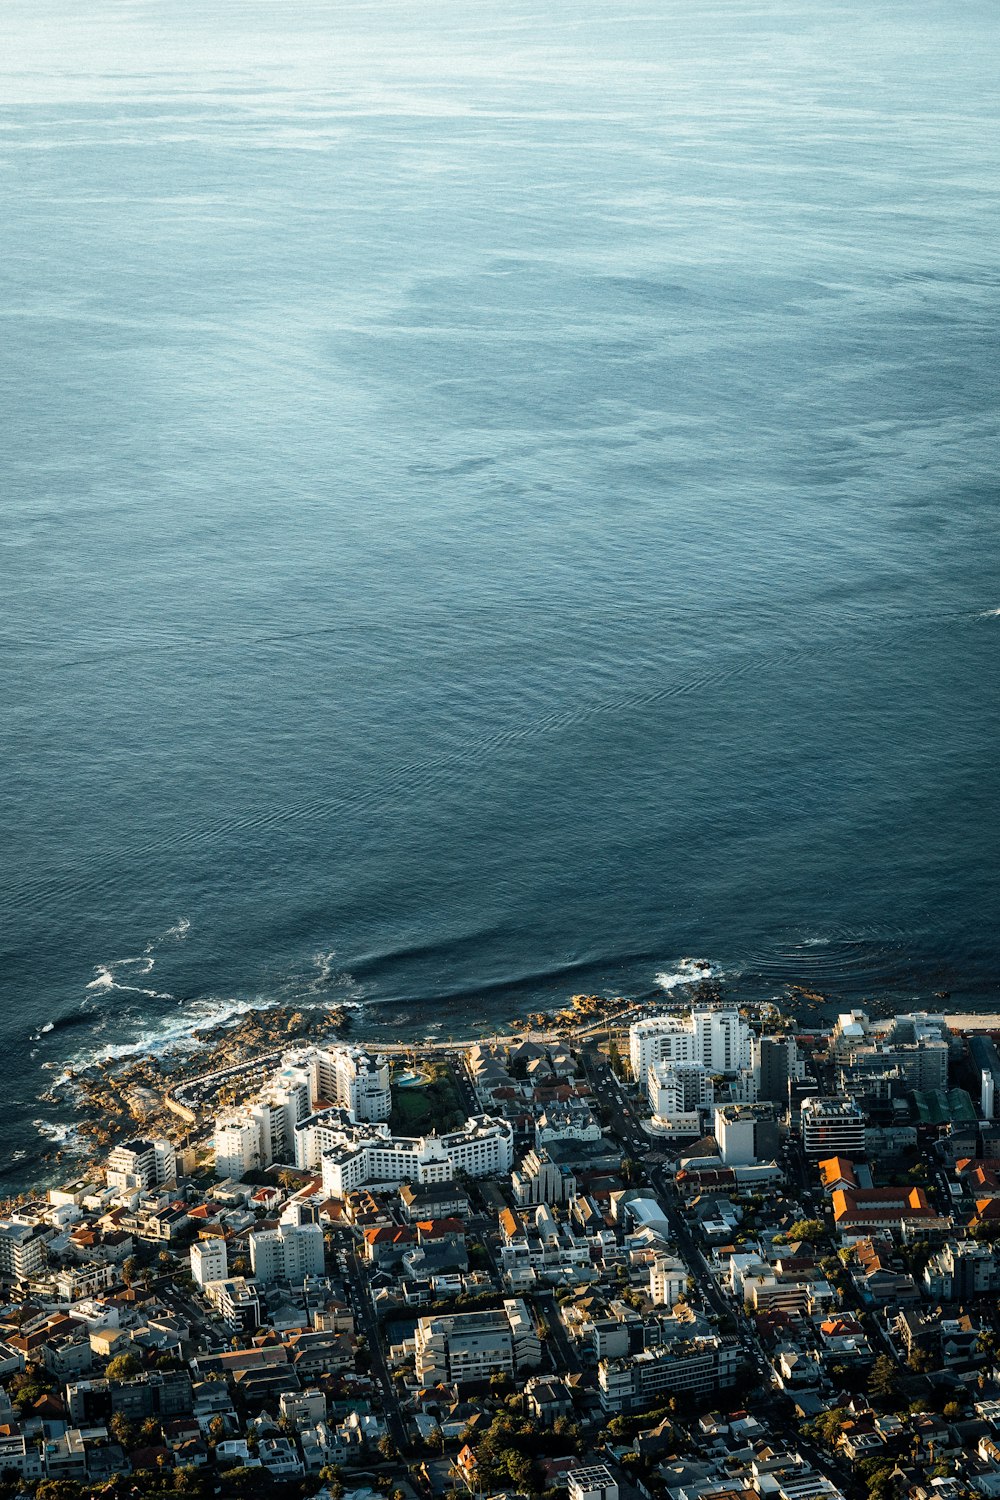 Eine Luftaufnahme einer Stadt am Meer